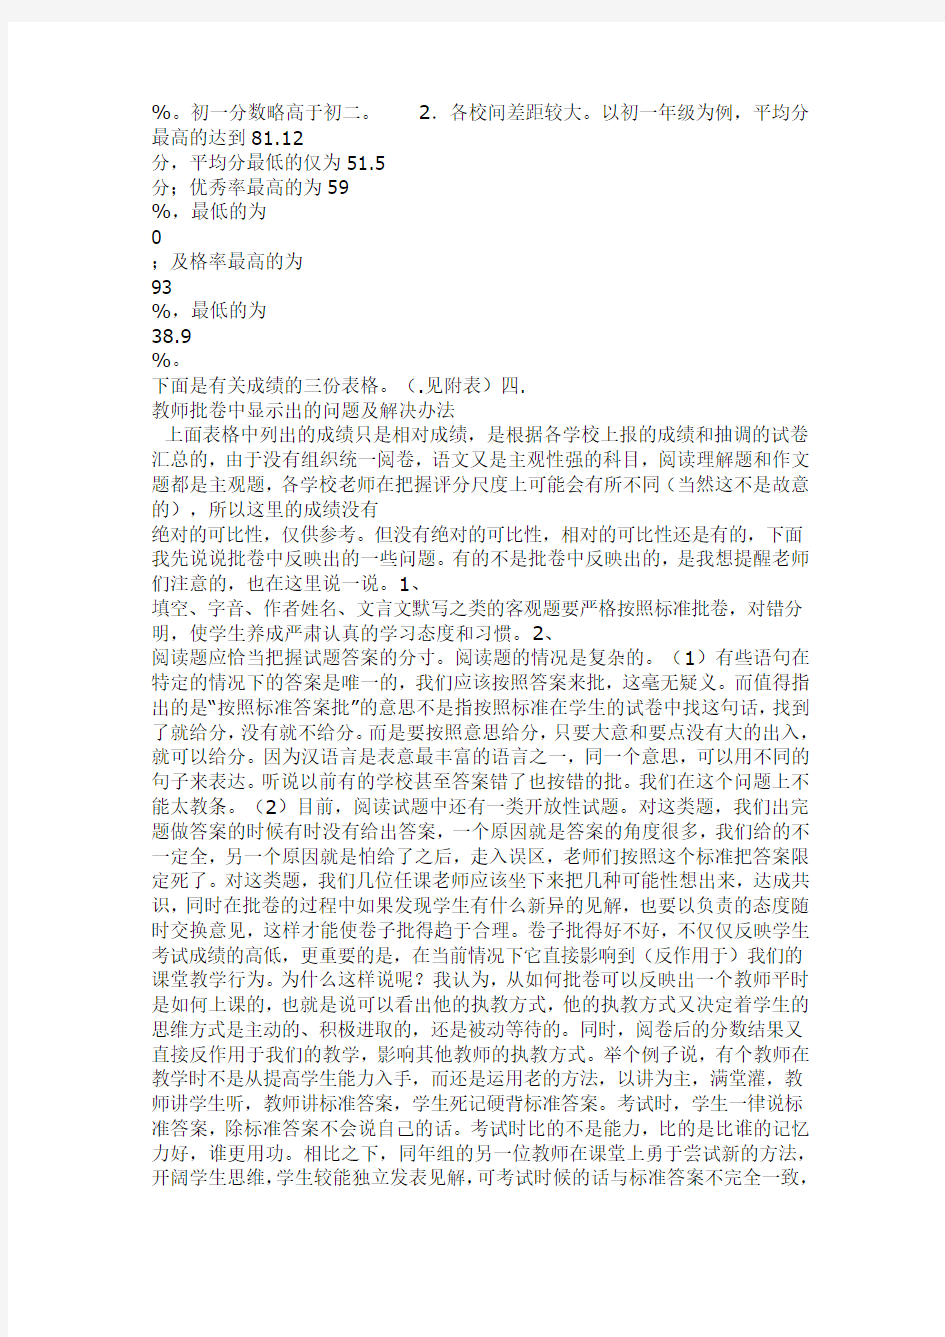 (完整)初中语文学科质量分析报告